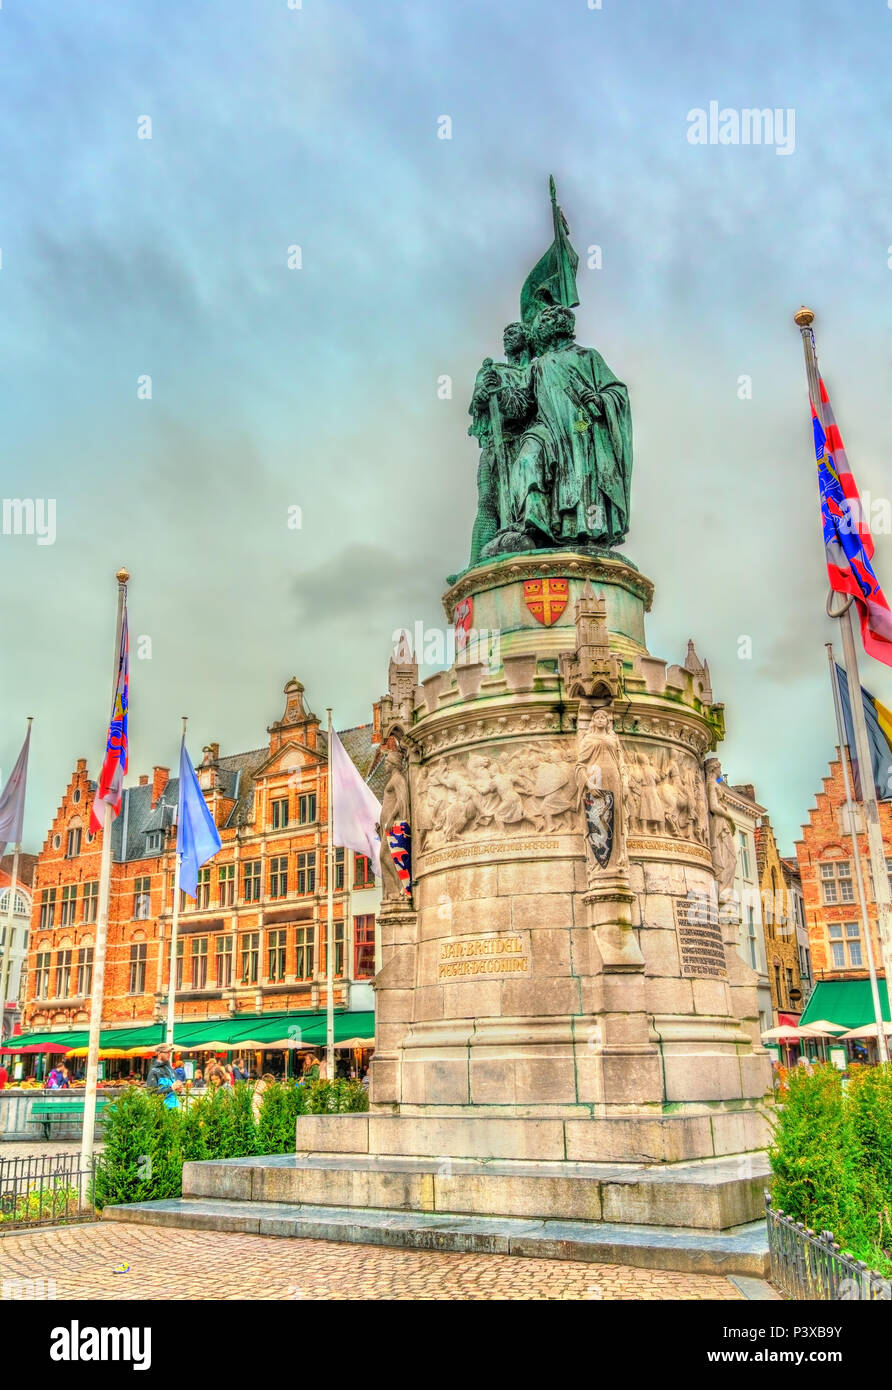 Statue of Jan Breydel and Pieter de Coninck in Bruges, Belgium Stock Photo